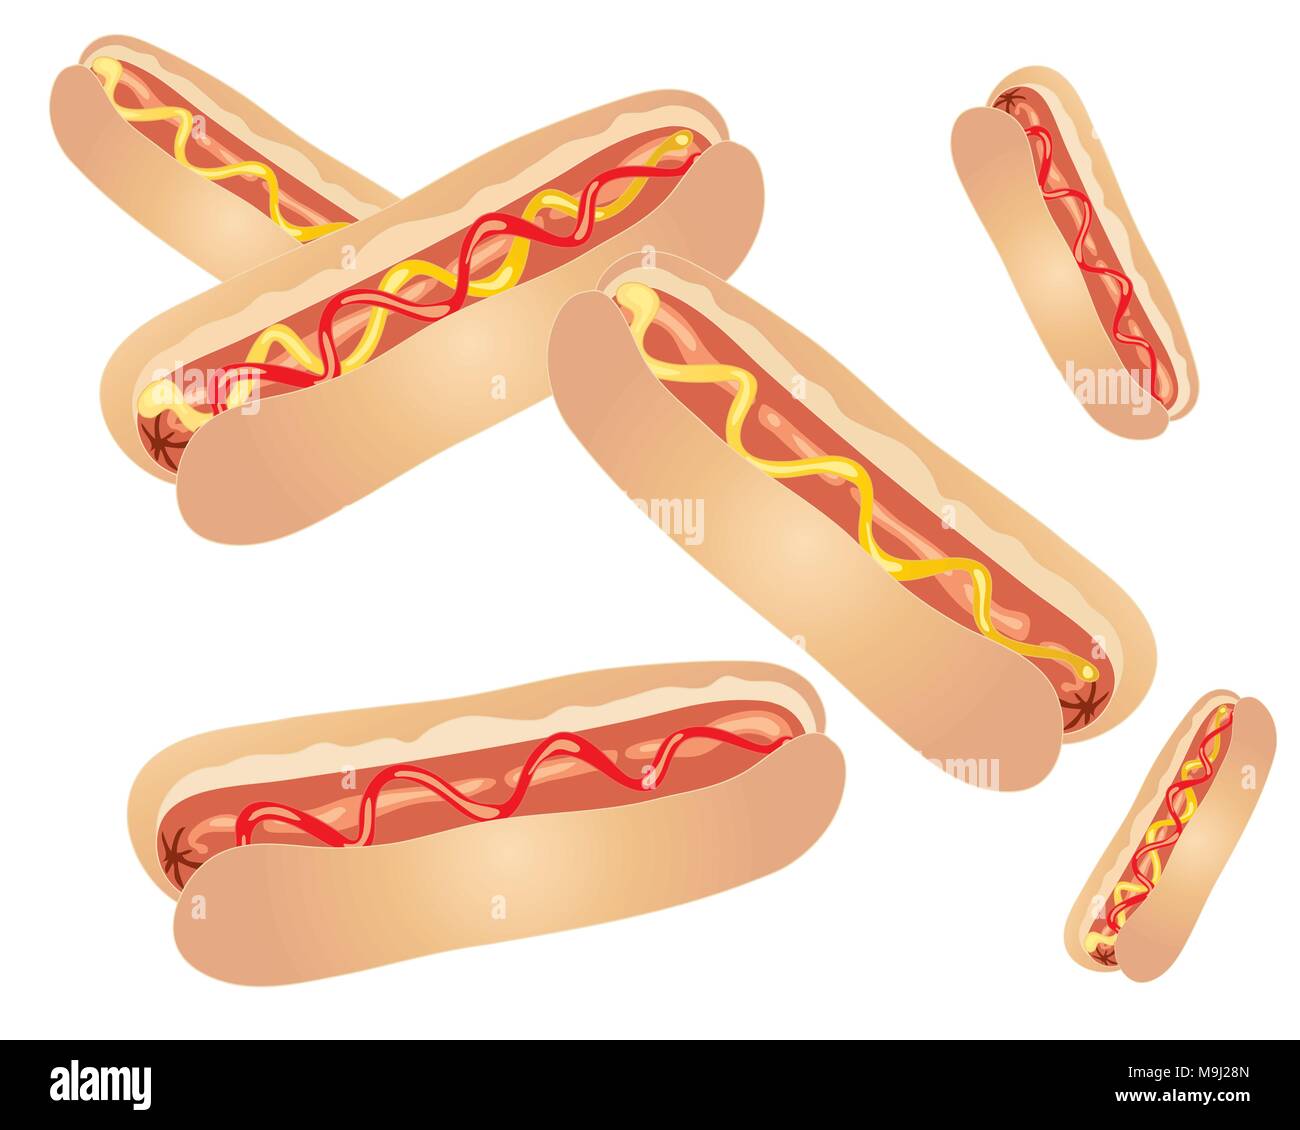 Un vecteur illustration en eps 10 format des saucisses à hot dog dans le pain brioches avec du ketchup et moutarde garnir sur fond blanc avec un espace réservé au texte Illustration de Vecteur